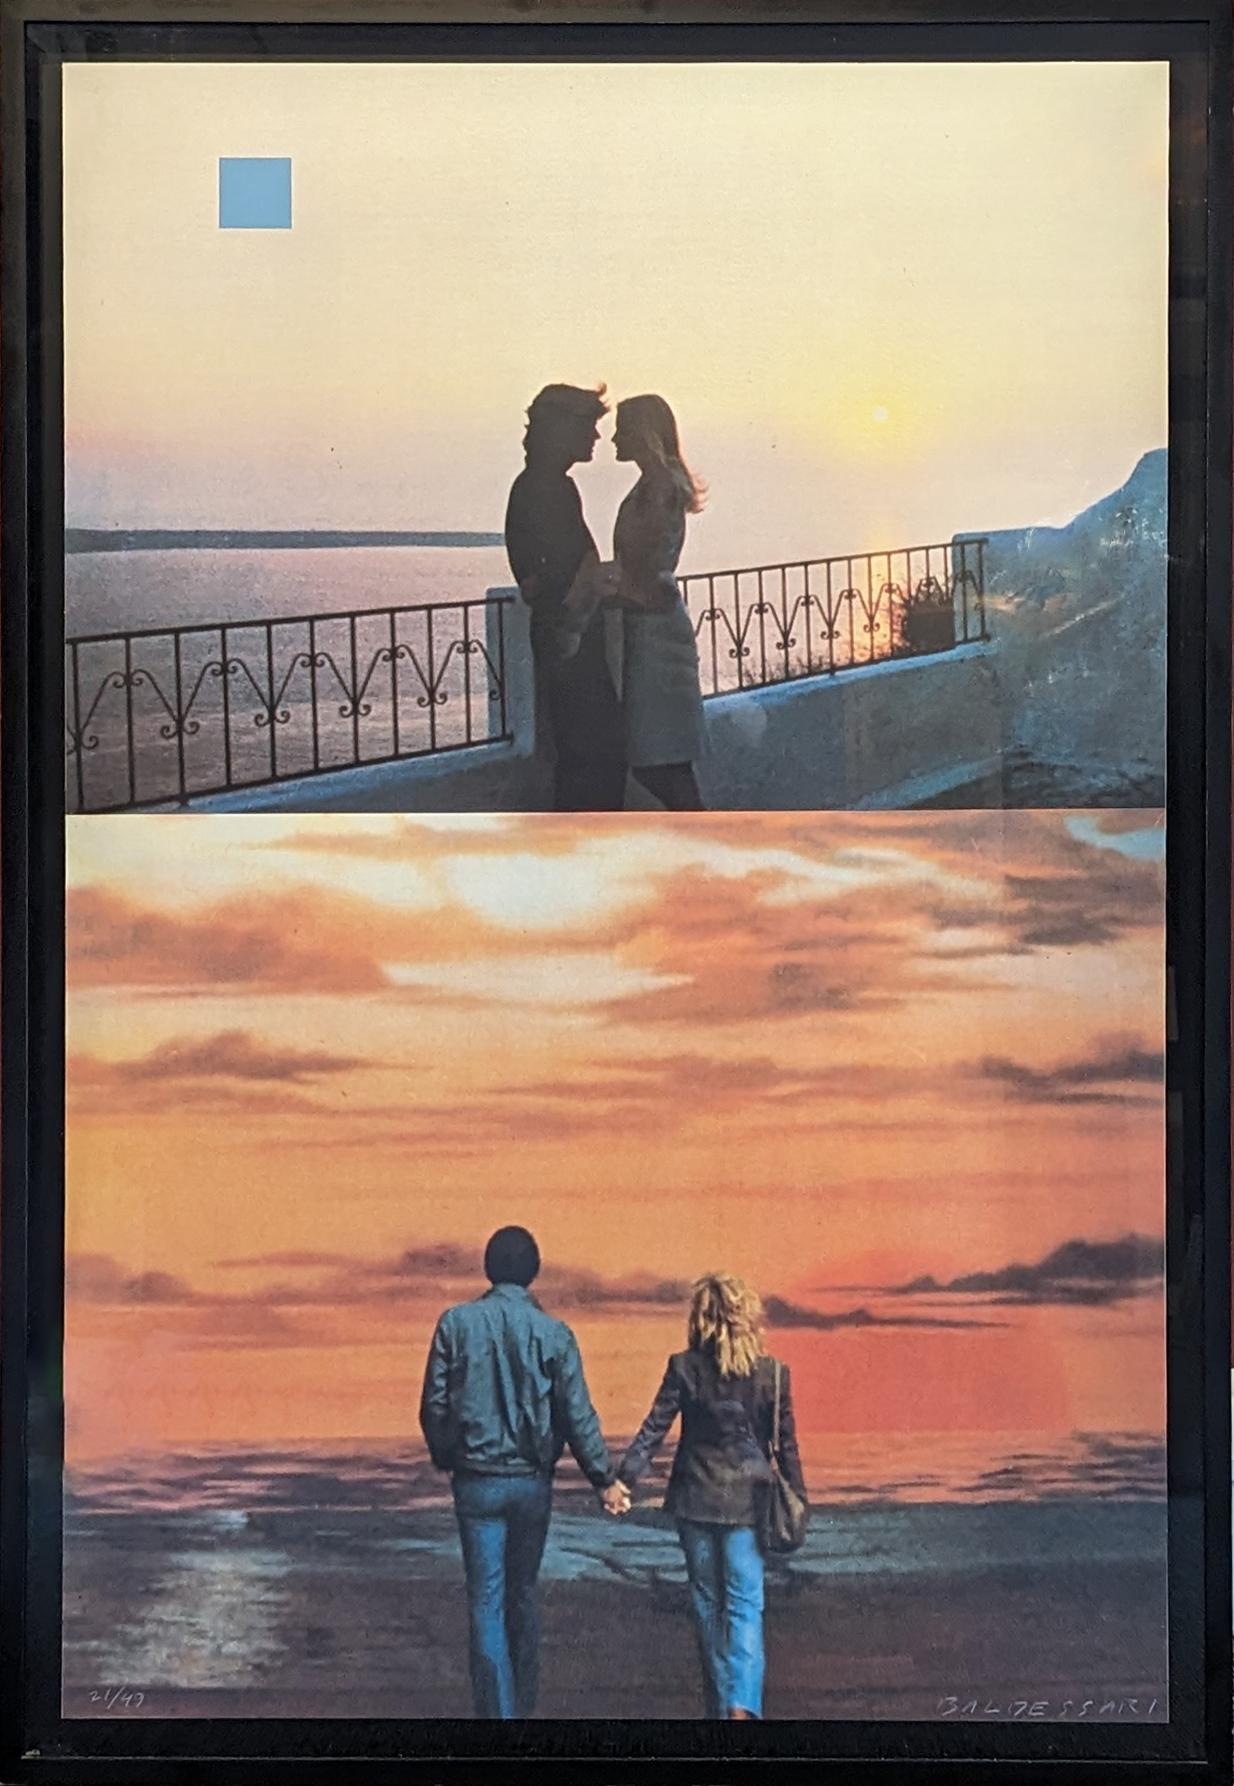 Zwei Sonnenuntergänge (einer mit quadratischem blauem Mond), 1994
Siebdruck
48 x 32 Zoll
Auflage von 49
